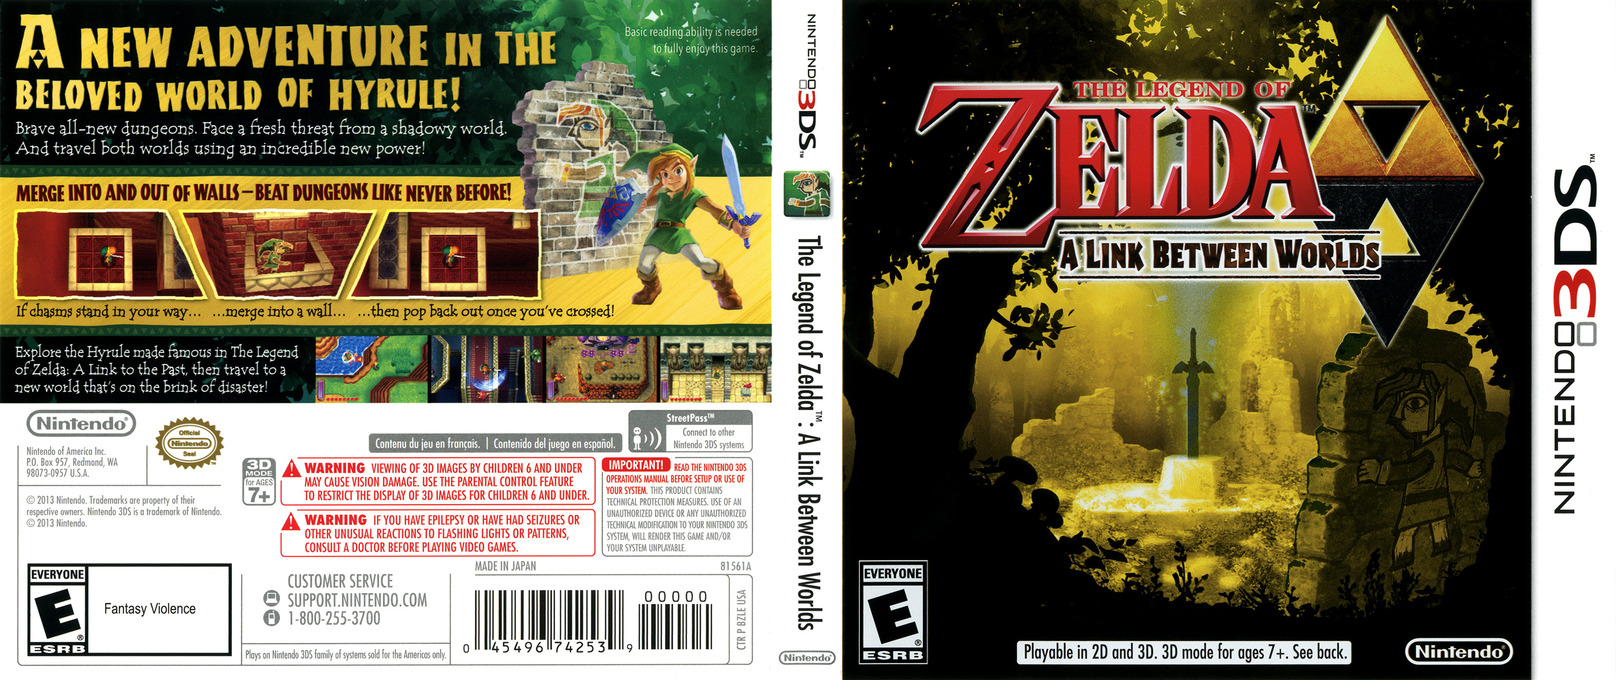 Legend Of Zelda Link Between Worlds Free Download Code